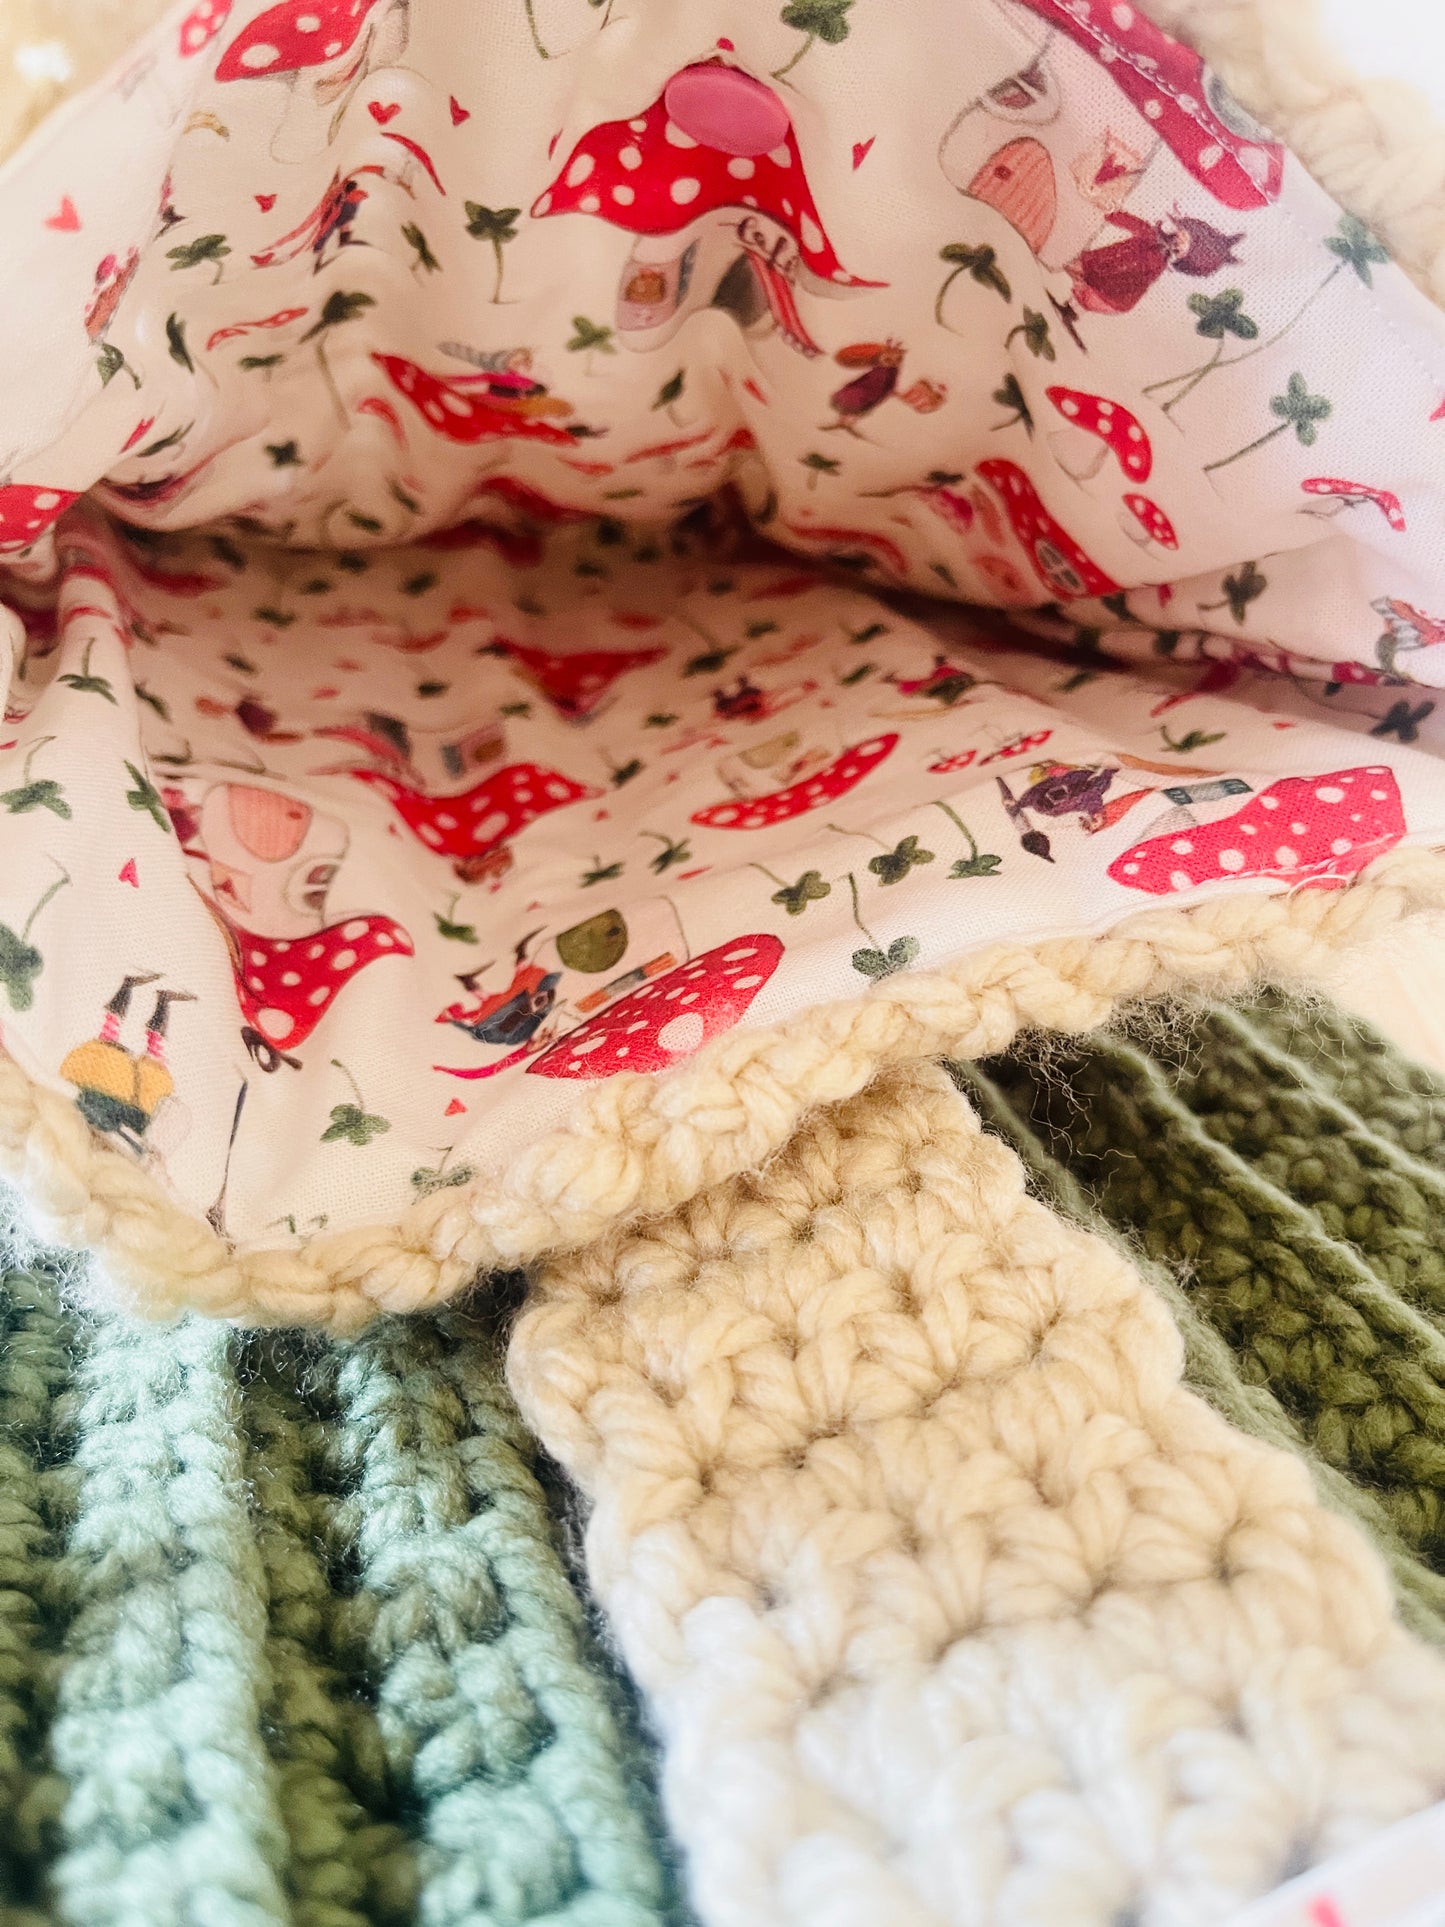 Handmade Crossbody Crochet bag